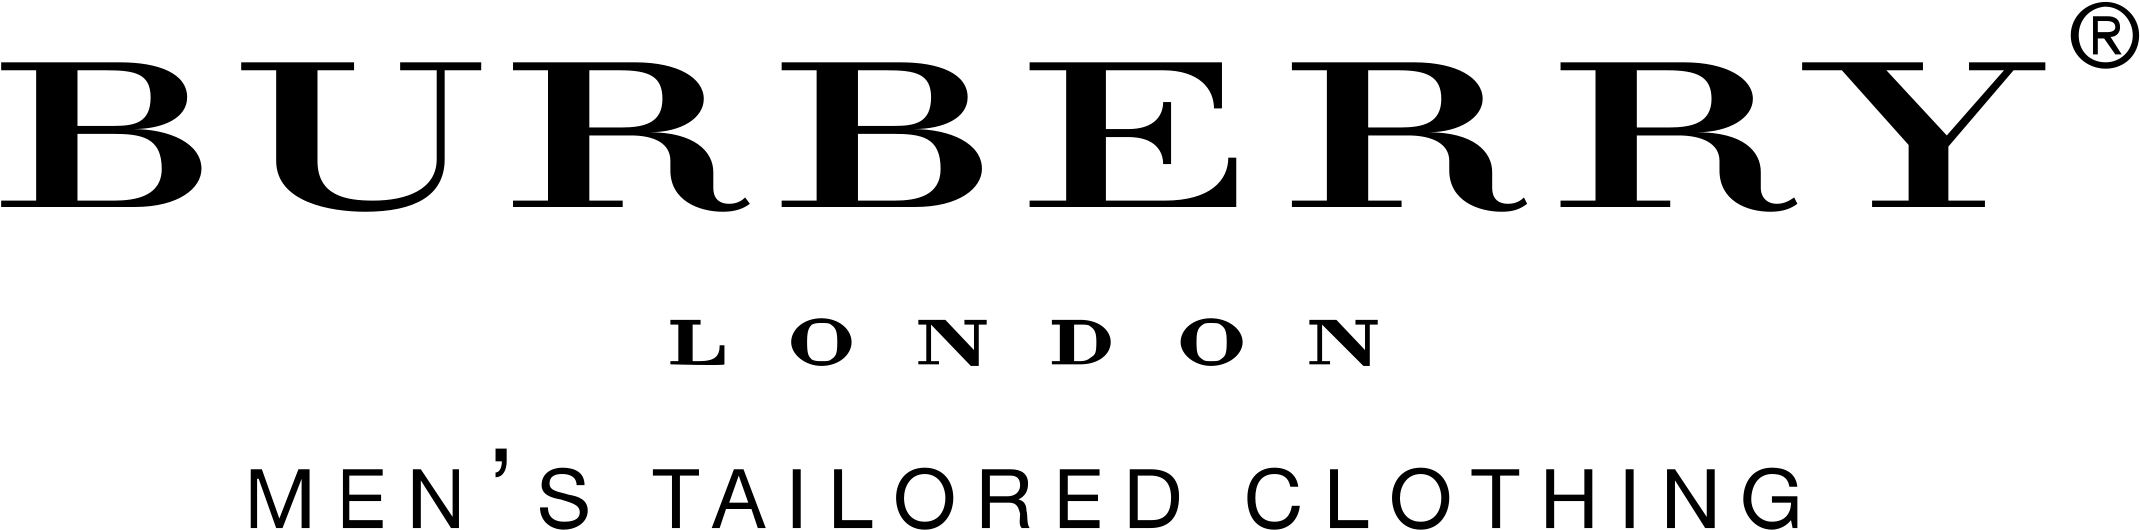 بربري شعار PNG صورة عالية الجودة